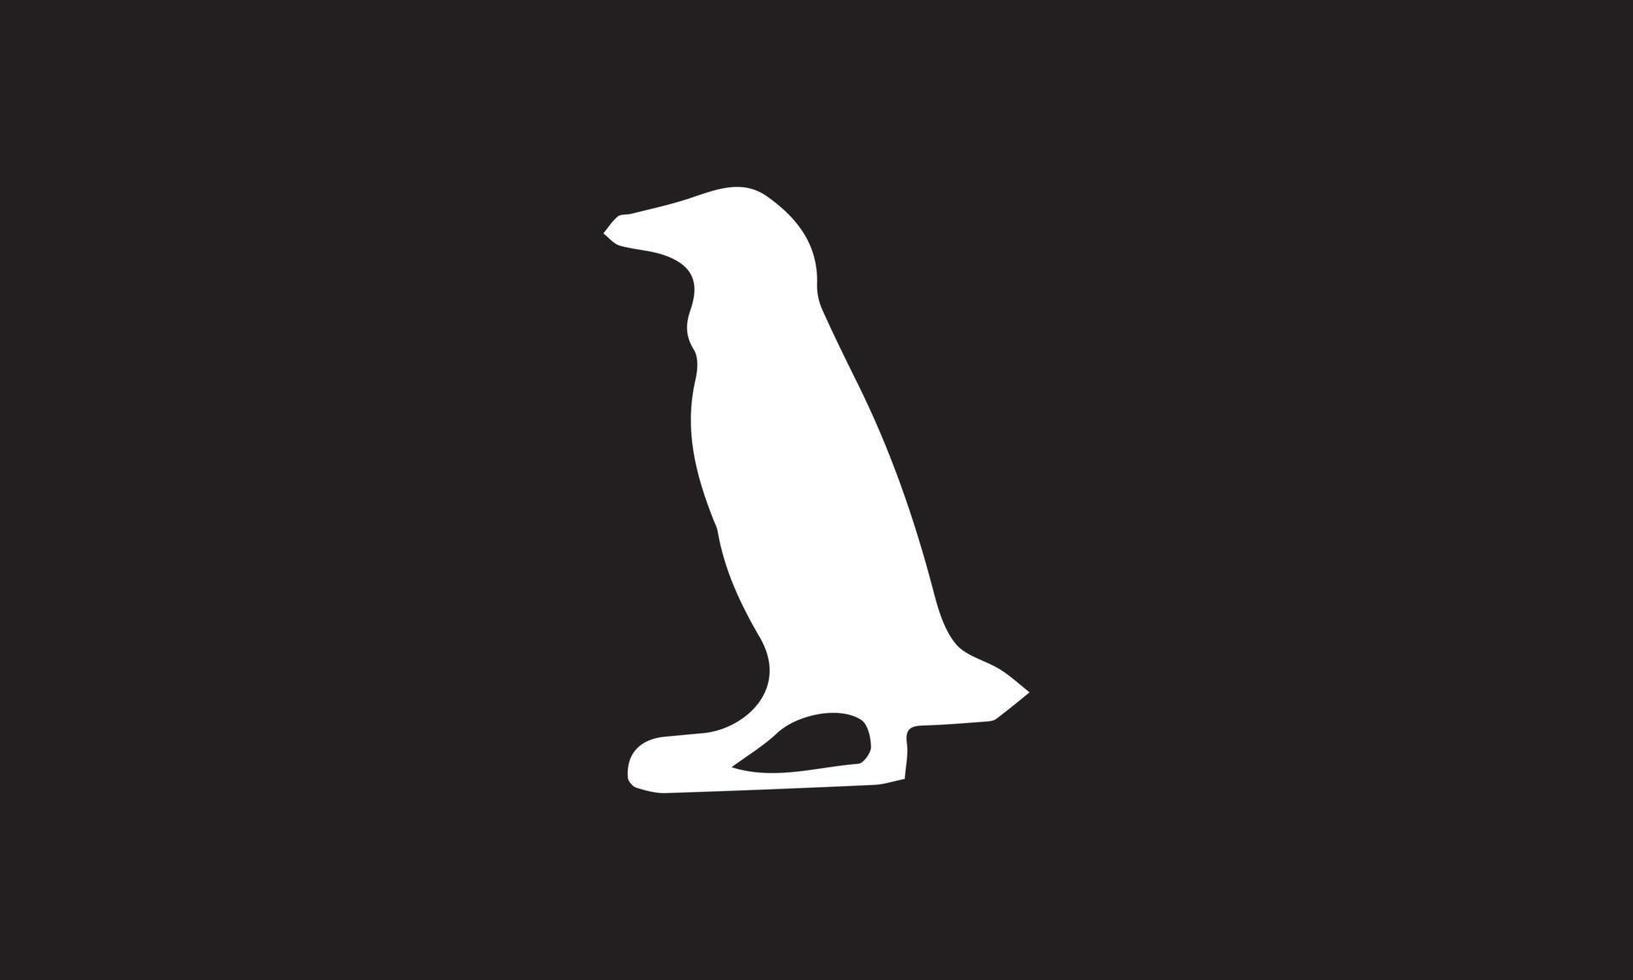 penguin vector illustration design black and white